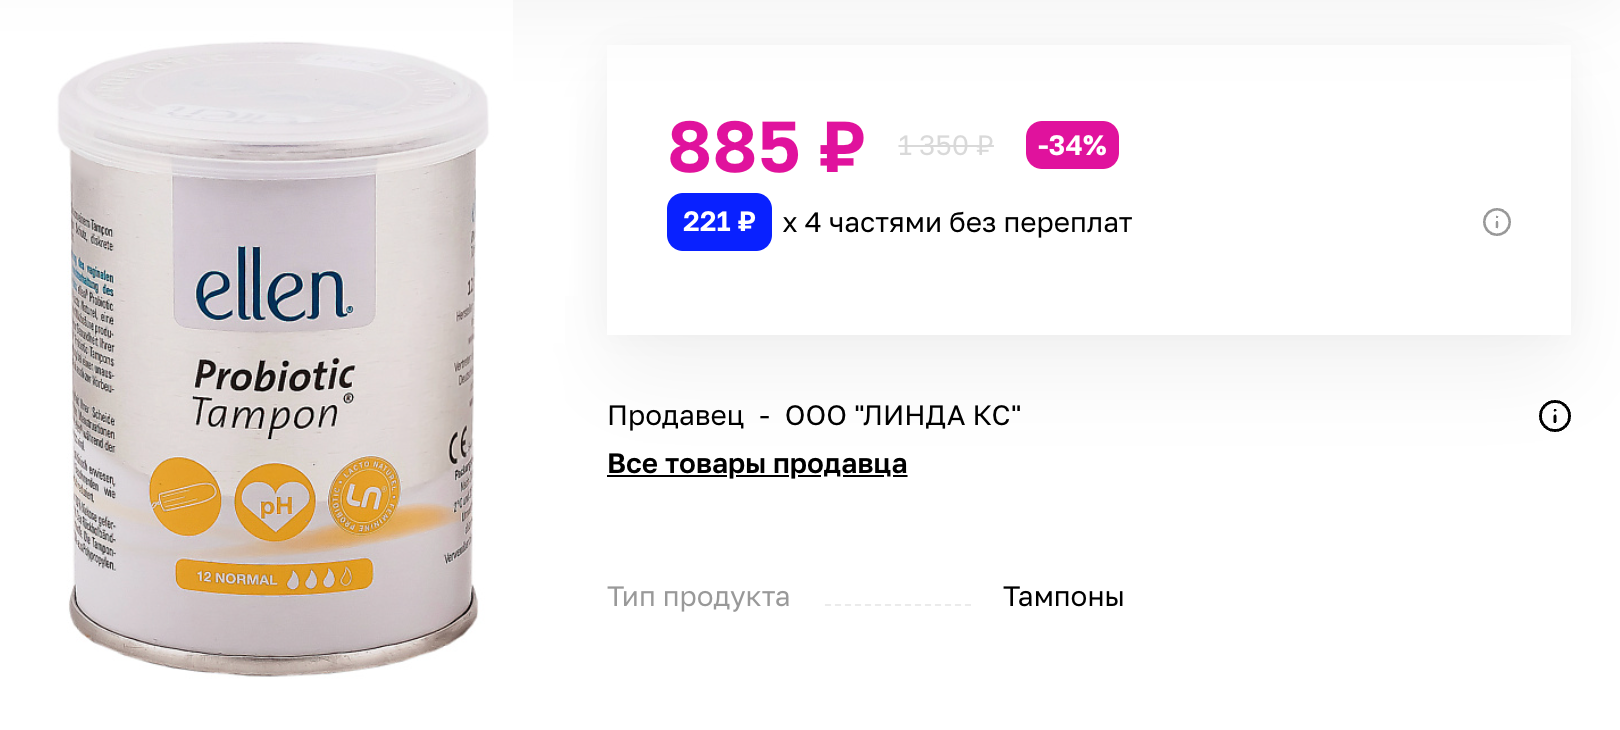 Тампоны с пробиотиками продают даже в магазинах косметики и на маркетплейсах. Доказательств их пользы нет. Источник: letu.ru